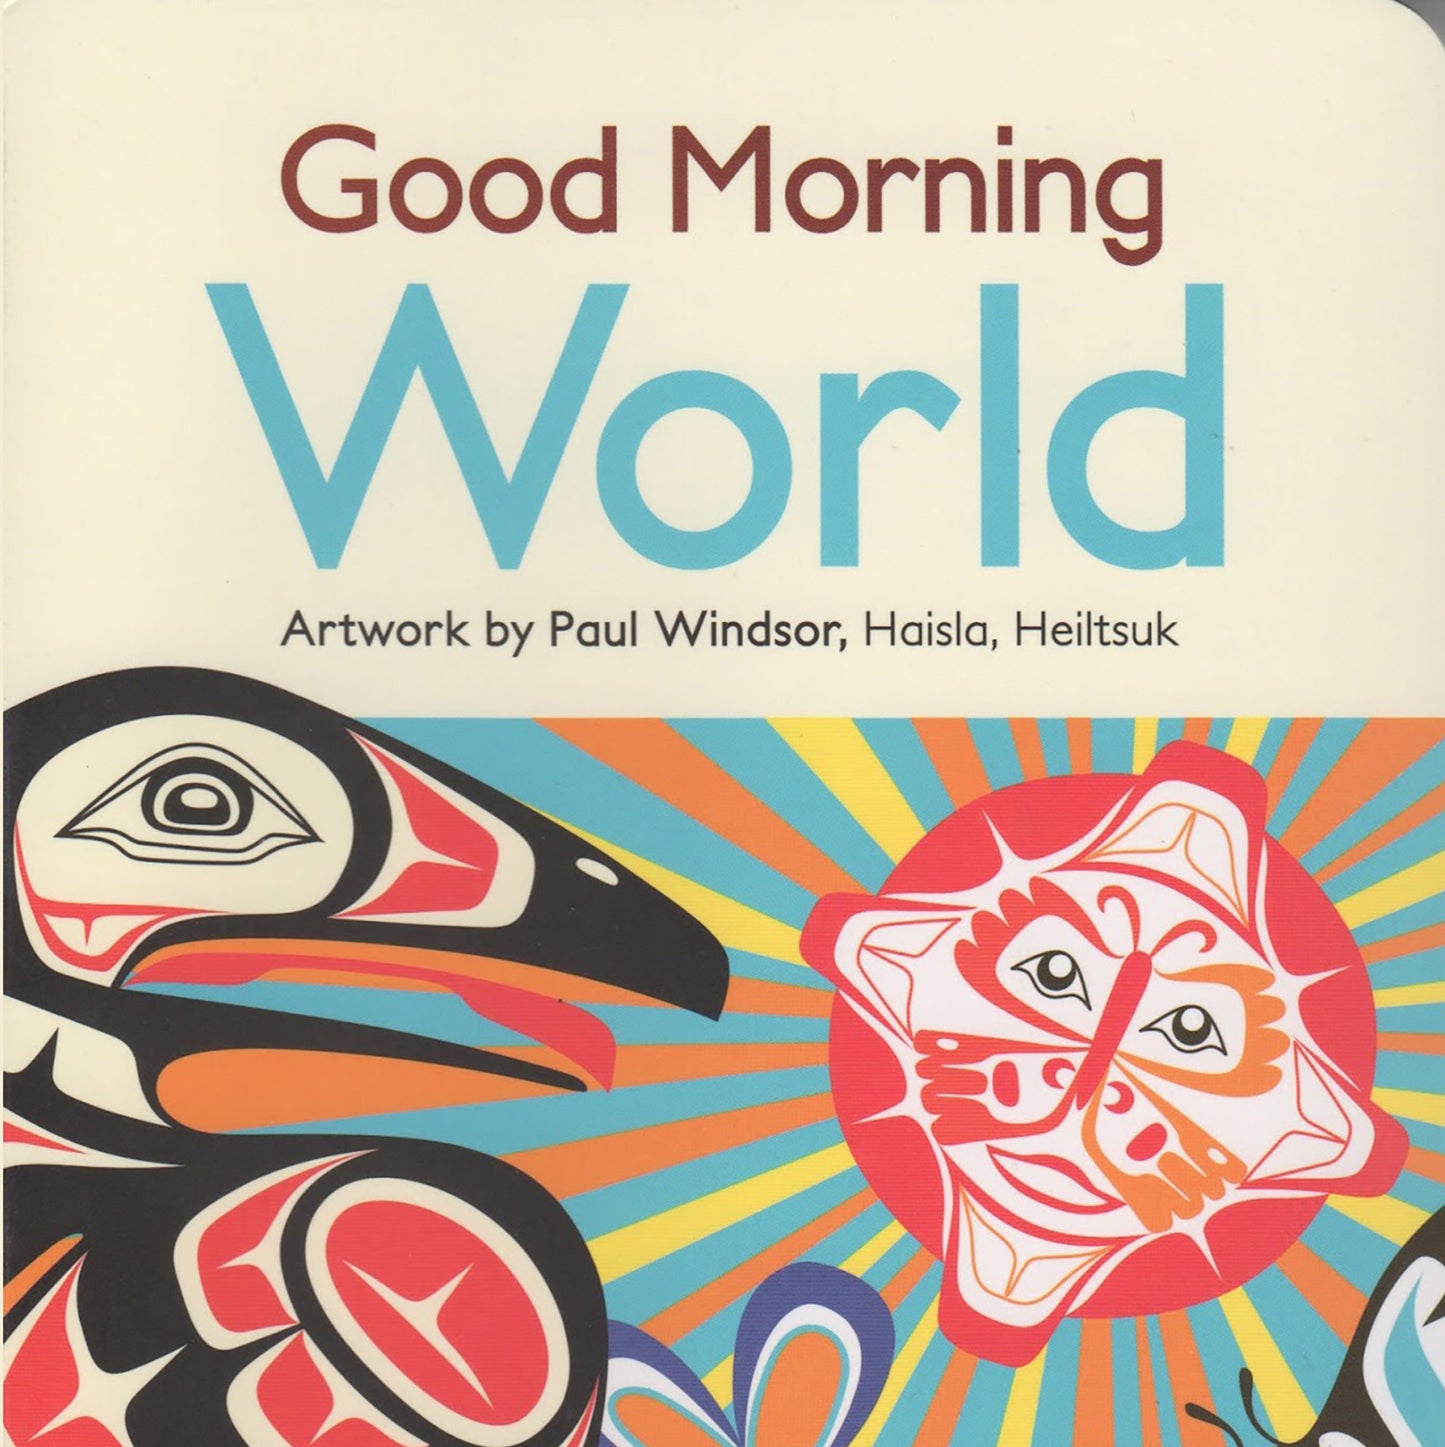 Board Book - "Good Morning World"